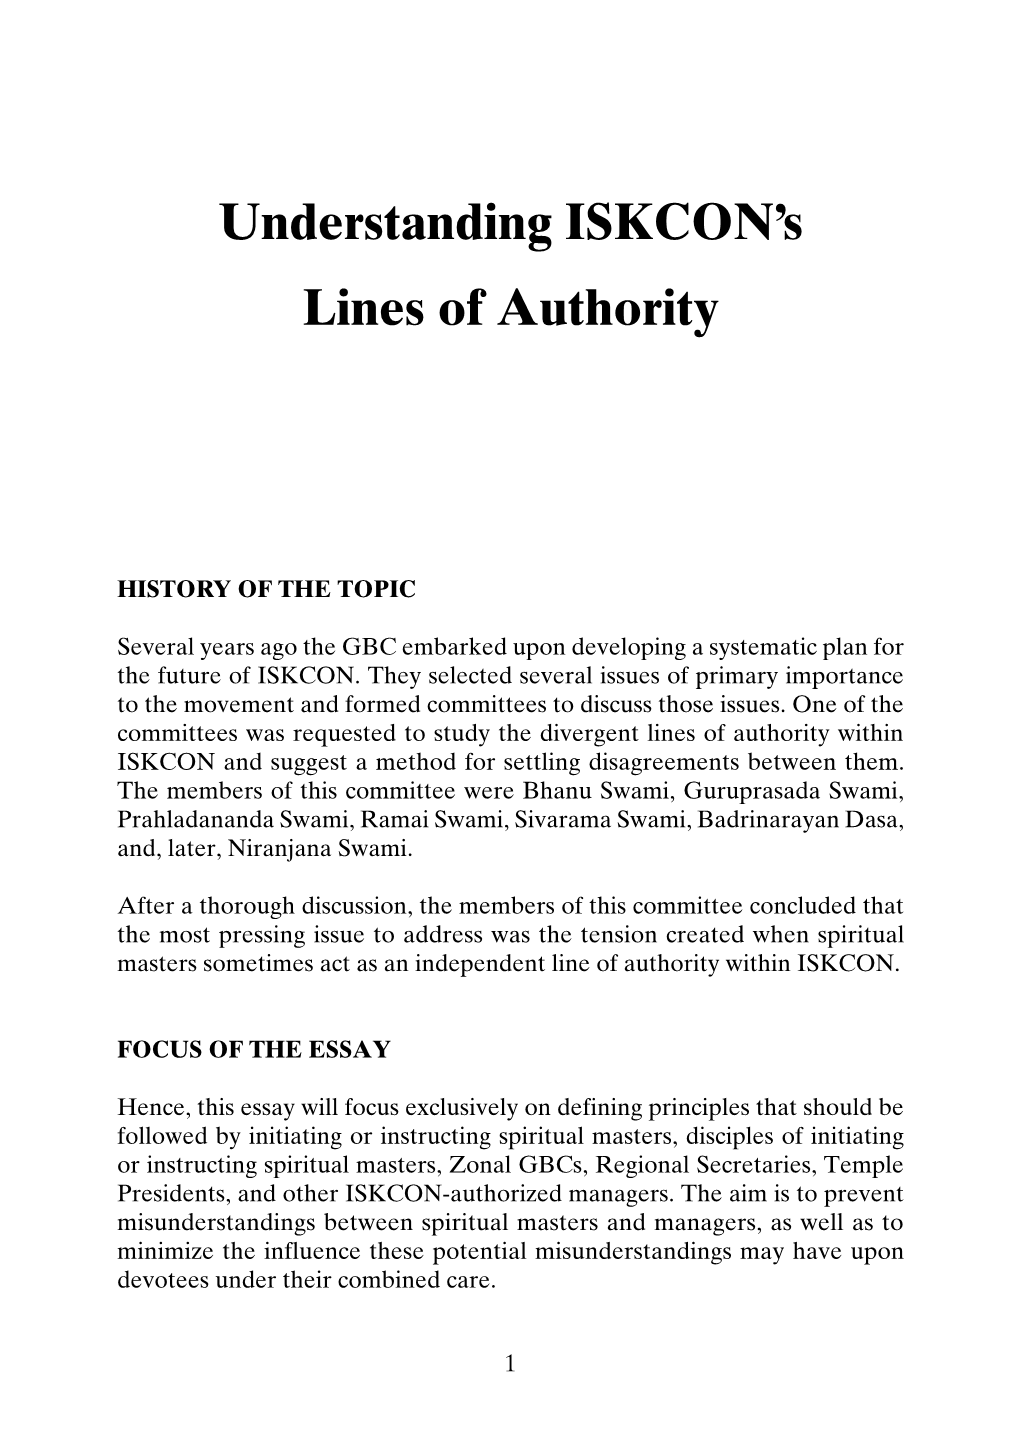 Understanding Iskcon's Lines of Authority